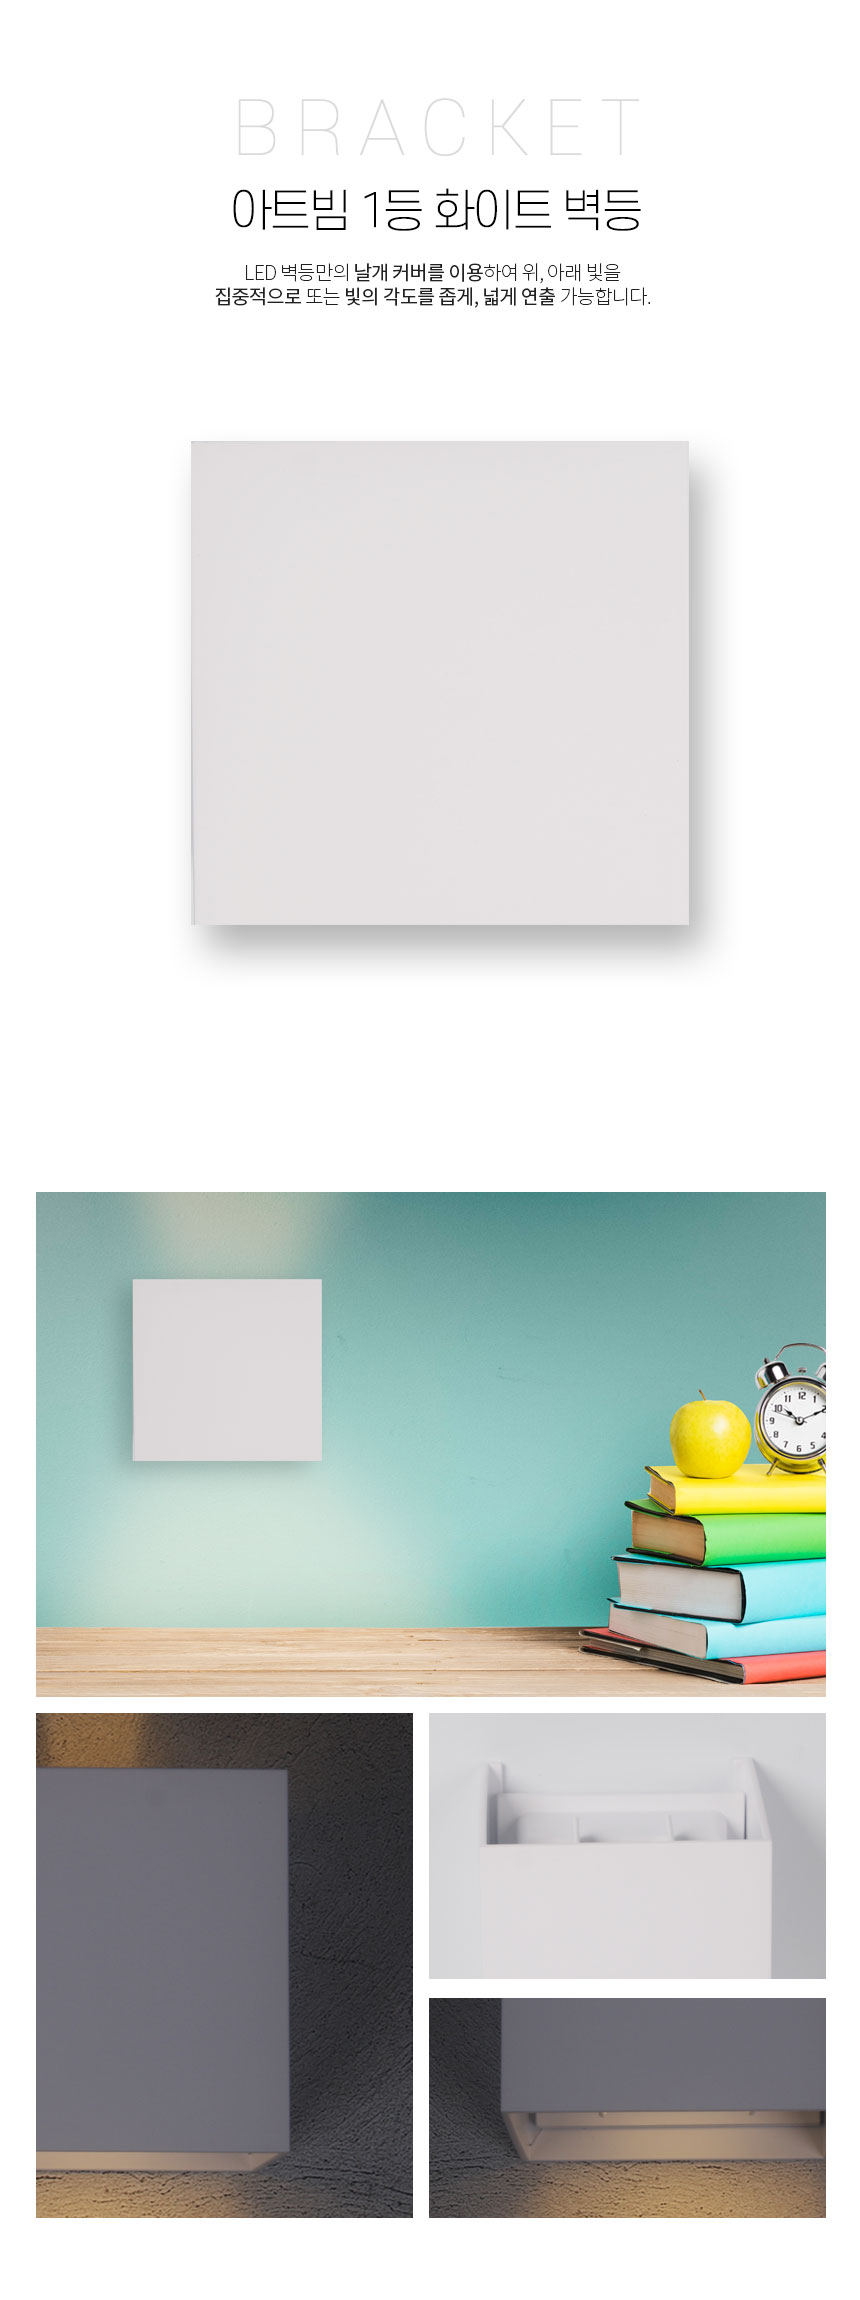 아트빔 1등 화이트 벽등 LED 벽등만의 날개 커버를 이용하여 위, 아래 빛을 
집중적으로 또는 빛의 각도를 좁게, 넓게 연출 가능합니다.